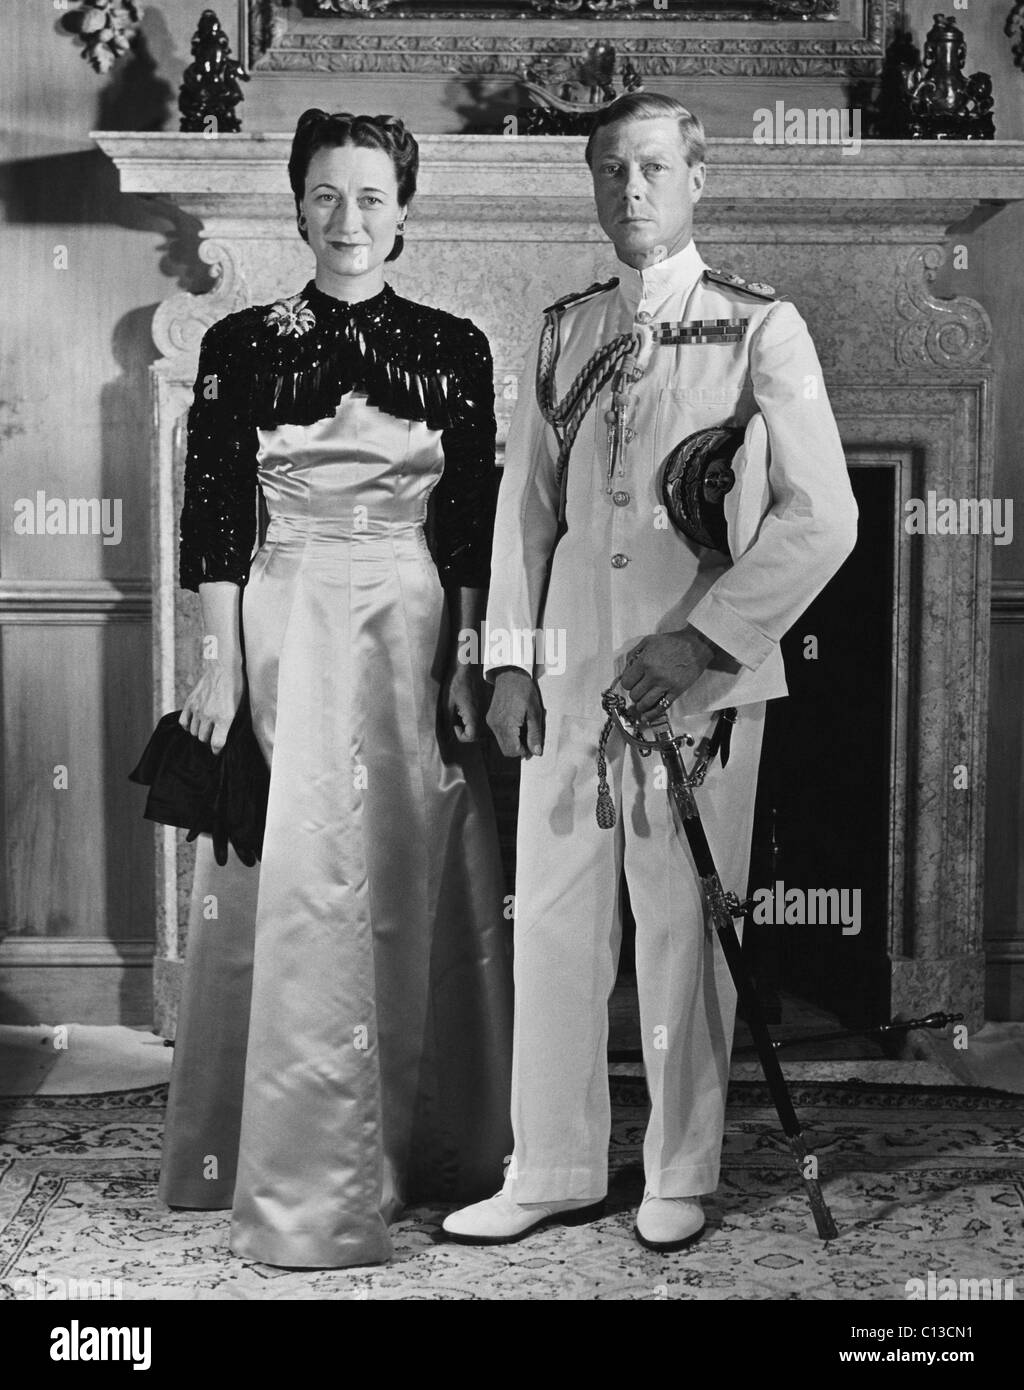 La duchessa di Windsor Wallis Simpson e Prince Edward, duca di Windsor, risalente alla fine degli anni trenta. Foto Stock